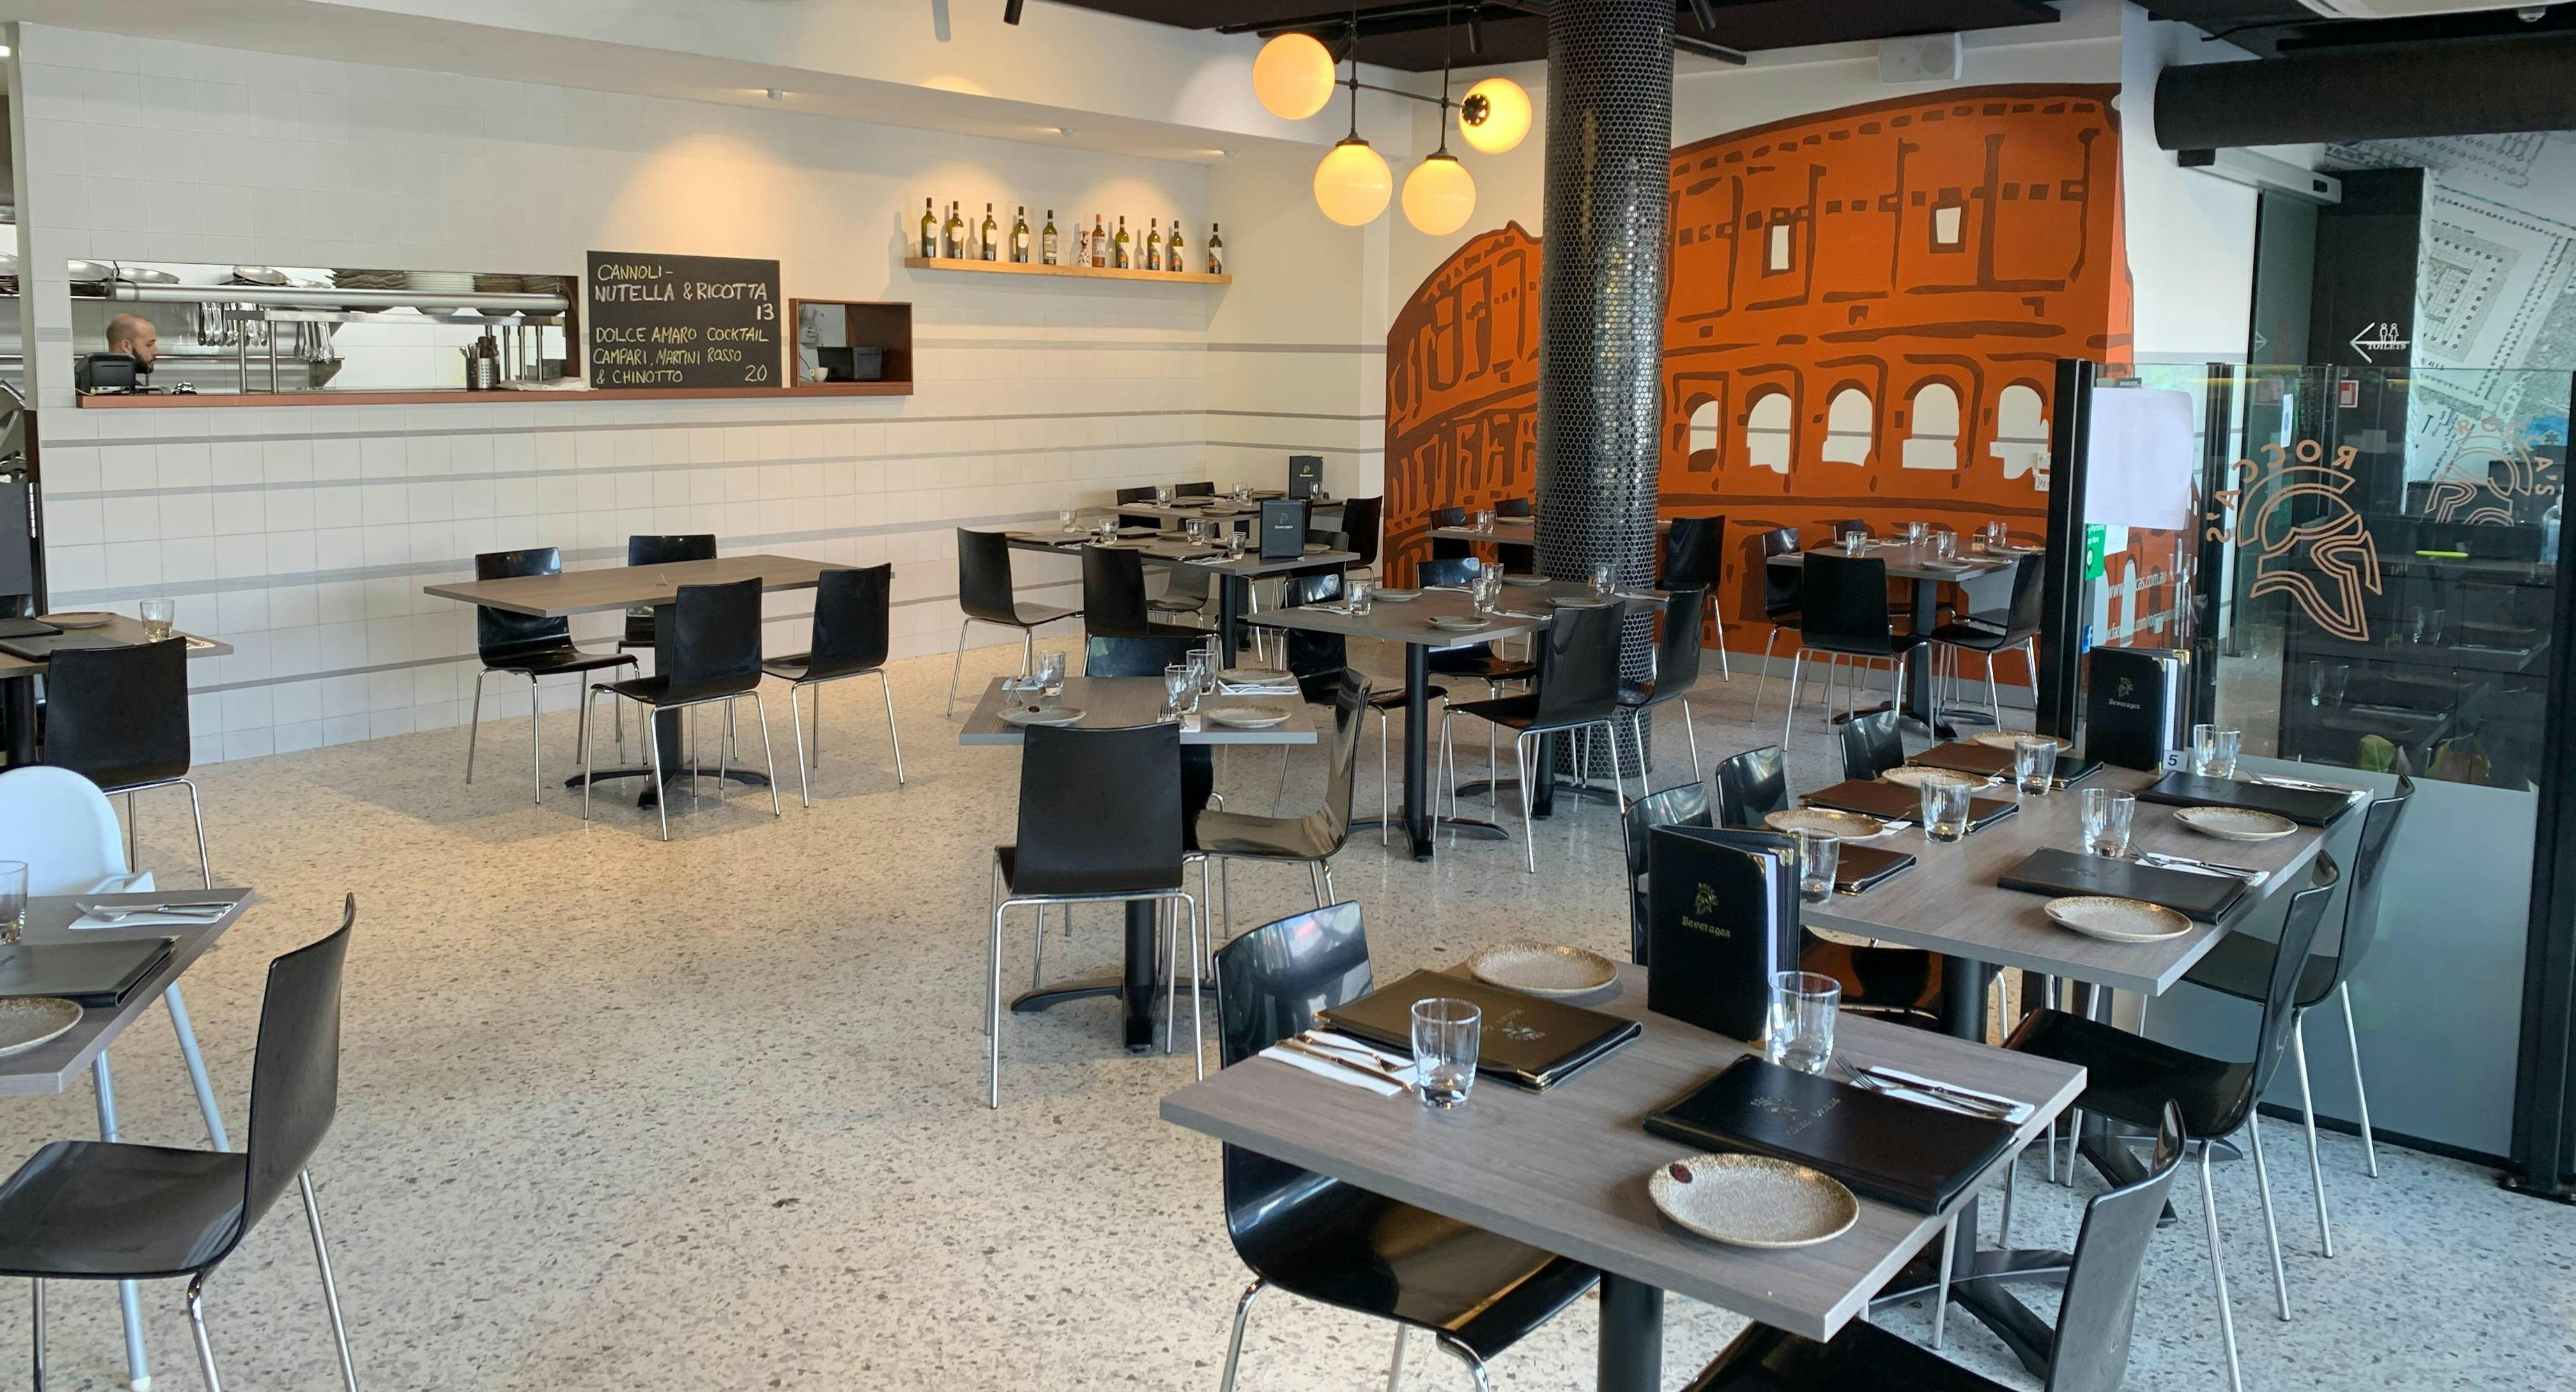 Photo of restaurant Rocca's Woodfire Pizzeria & Pasta Bar in Blackburn, Melbourne